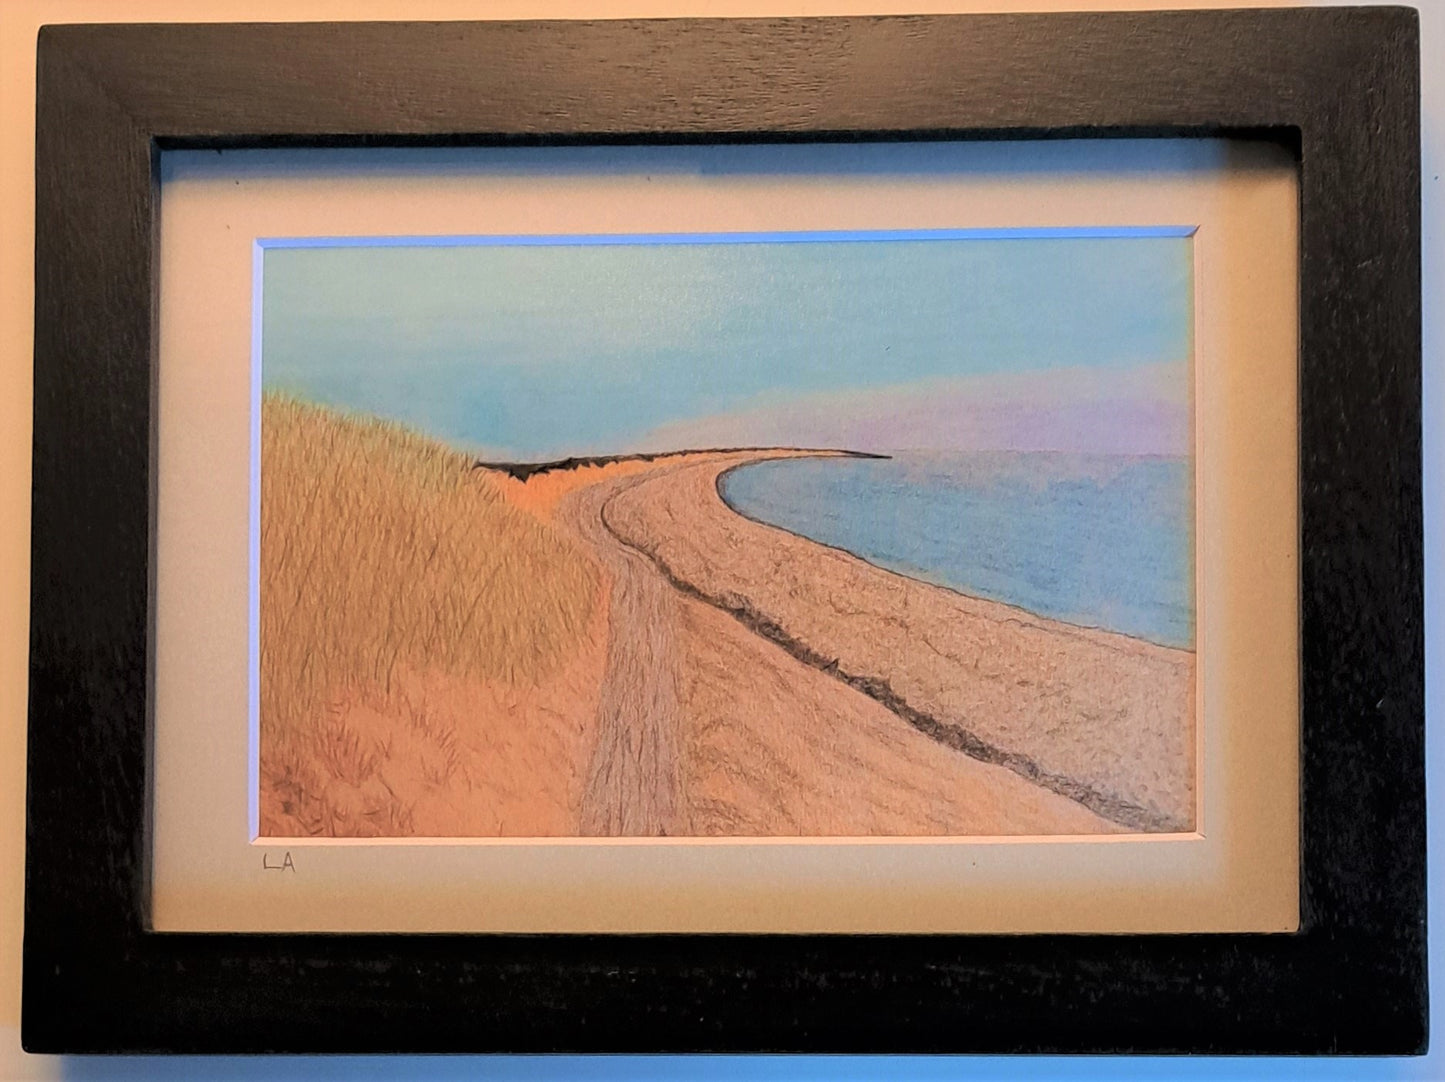 The Cove at Herring Beach:  5" x 7" frame, 4" x 6" print